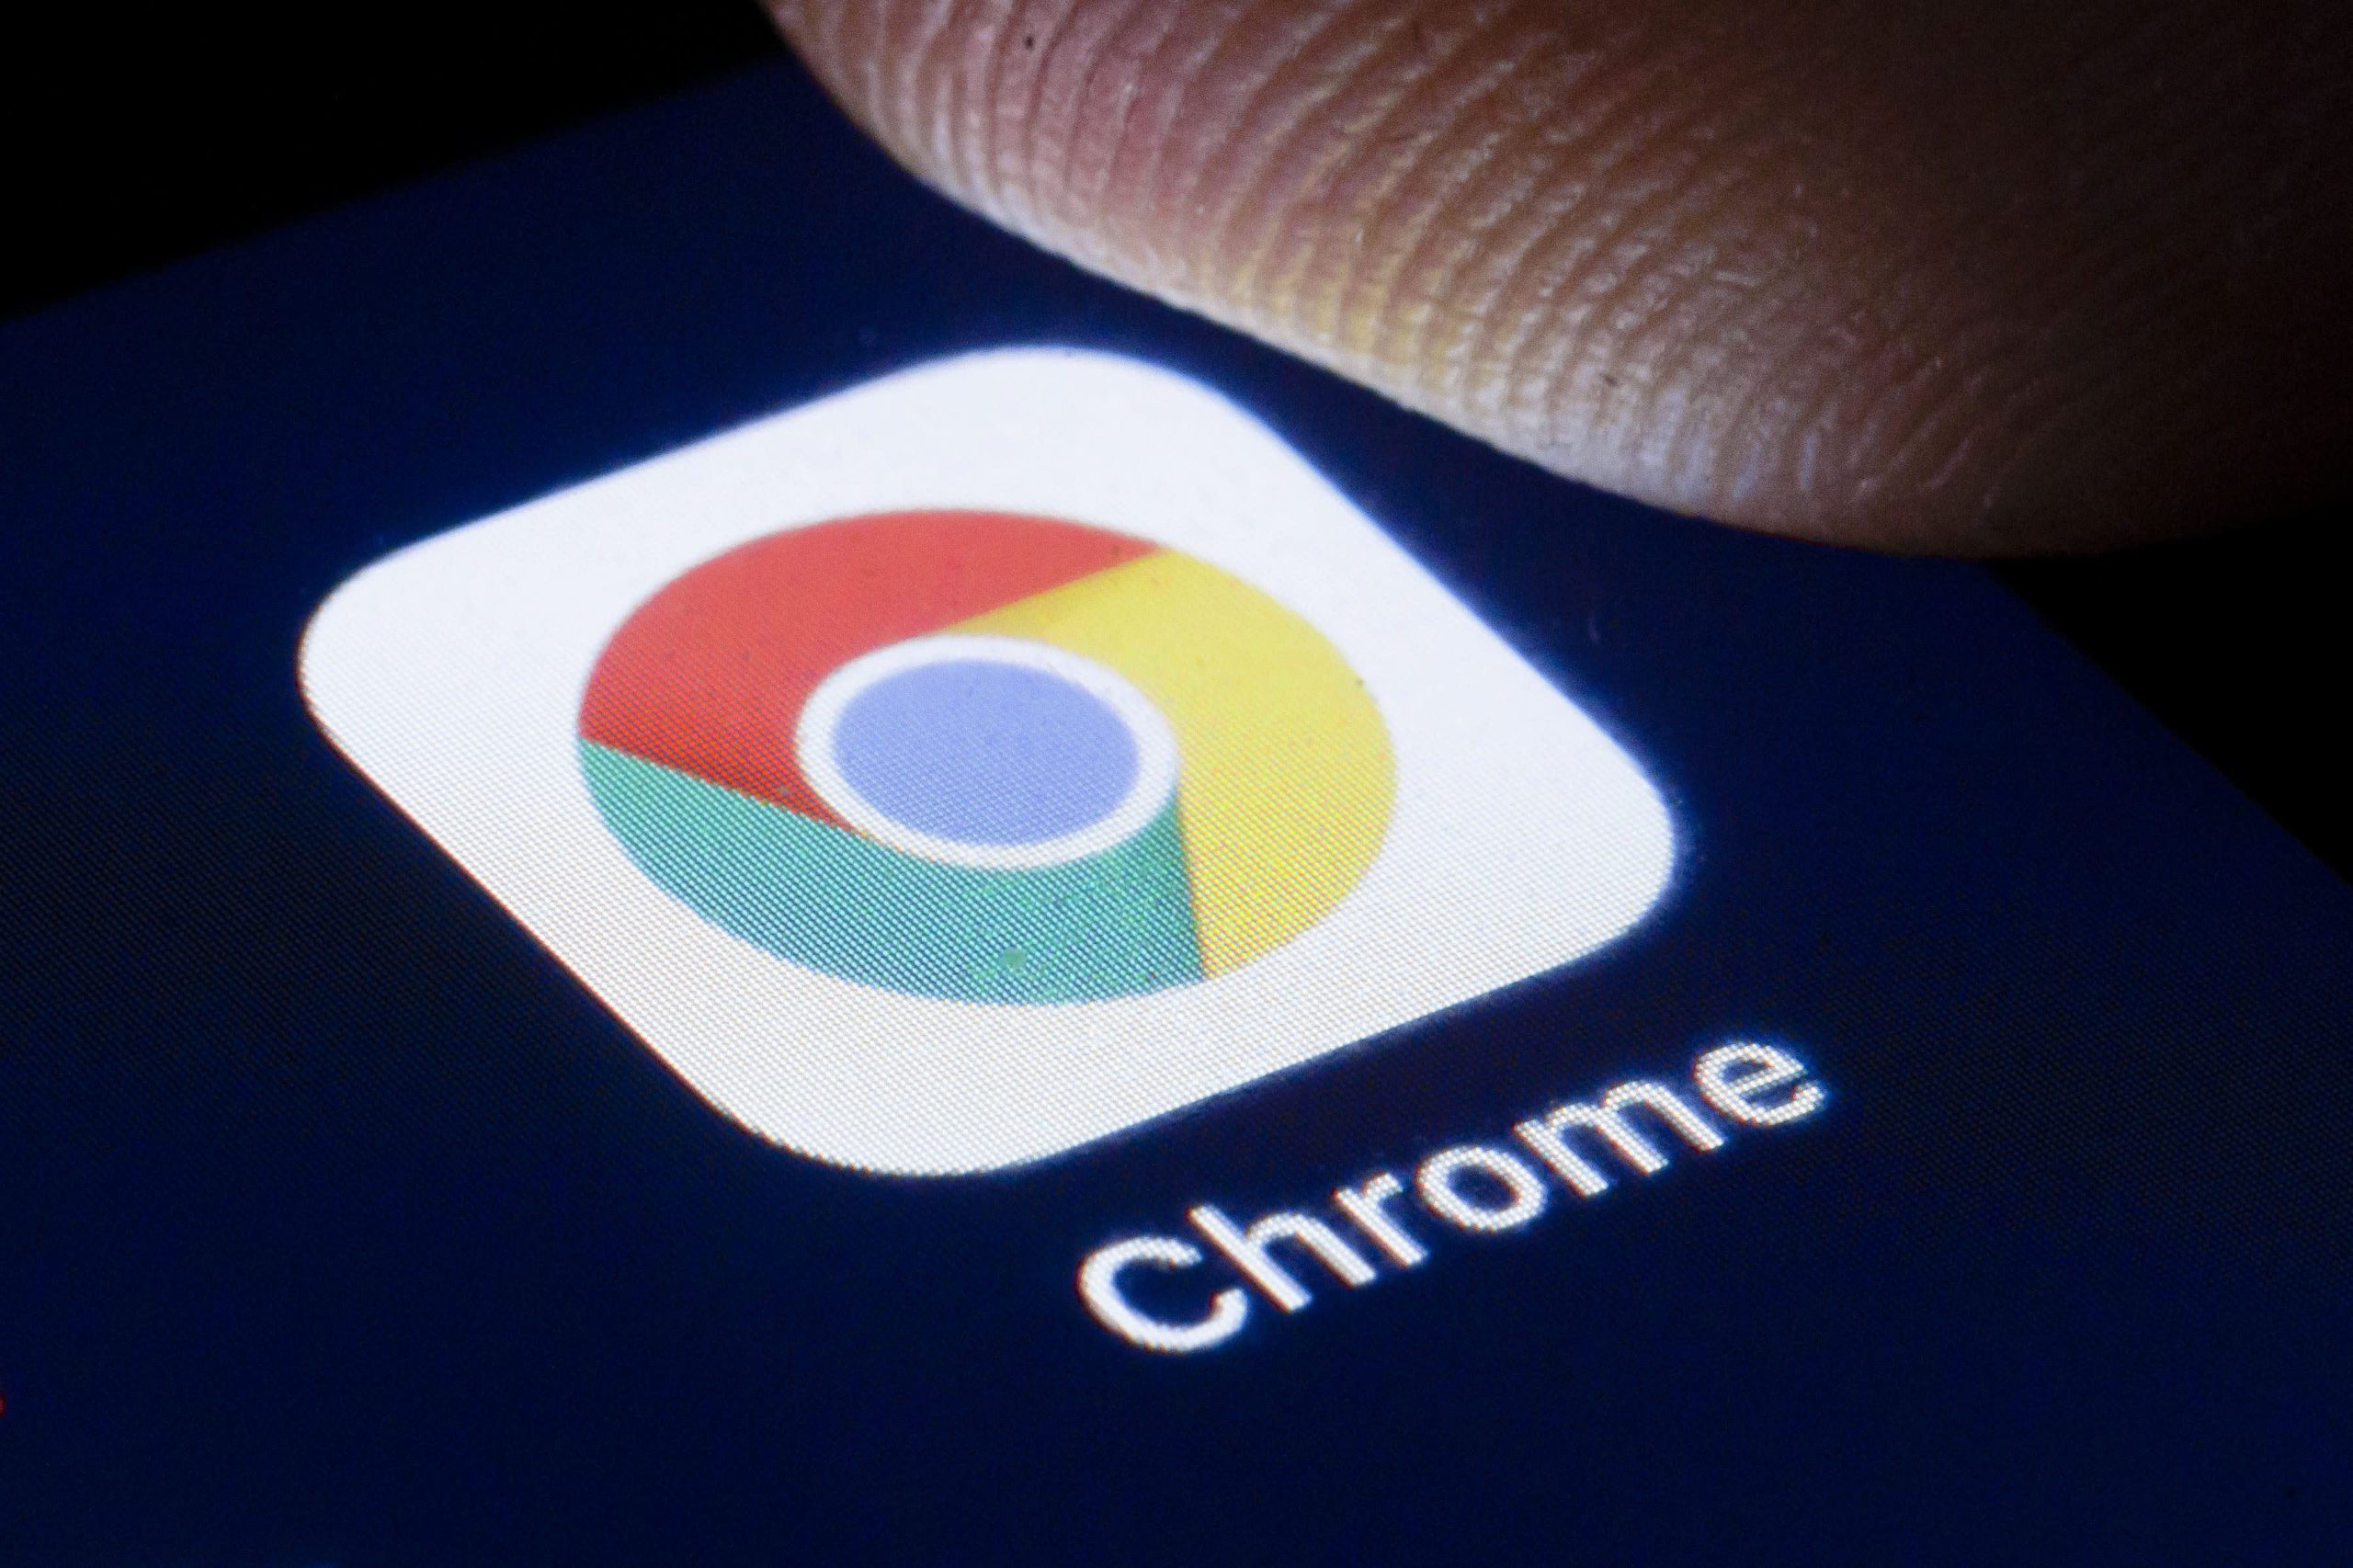  Browser-ul Chrome va oferi facilităţi pentru reducerea consumului de memorie şi energie